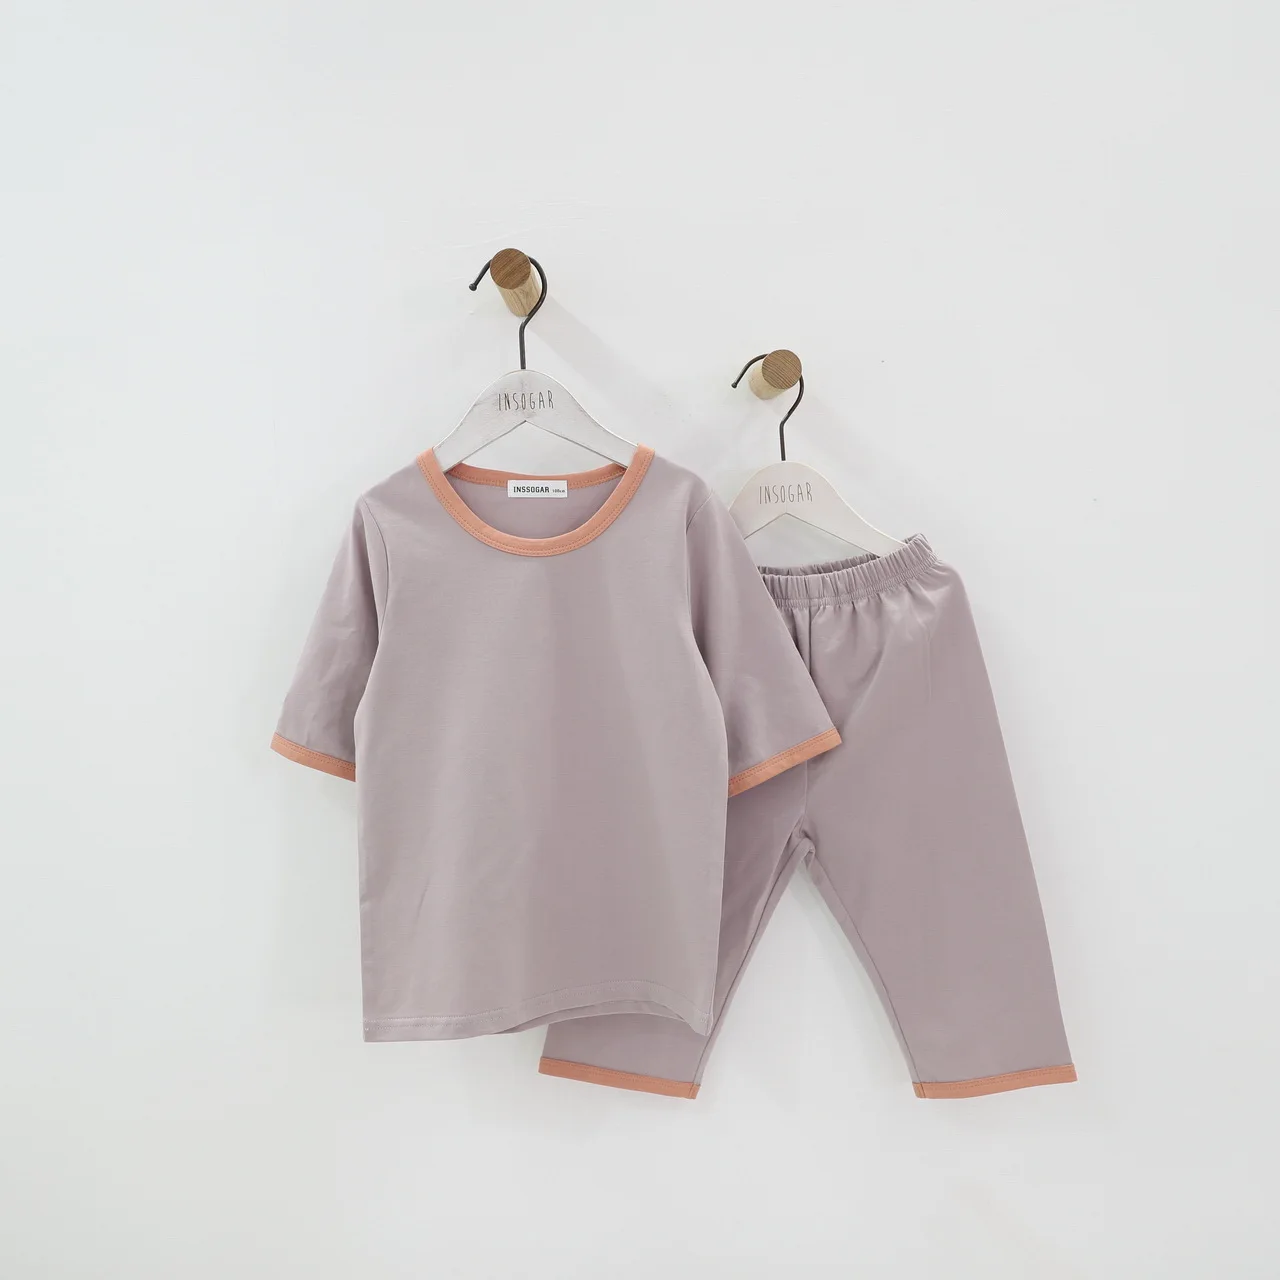 Дети мальчики девочки хлопковые пижамы комплект детская одежда 12 M 18 M 24 M 2 3 4 5 6 7 8 От 9 до 15 лет летние тонкие одежда для малышей